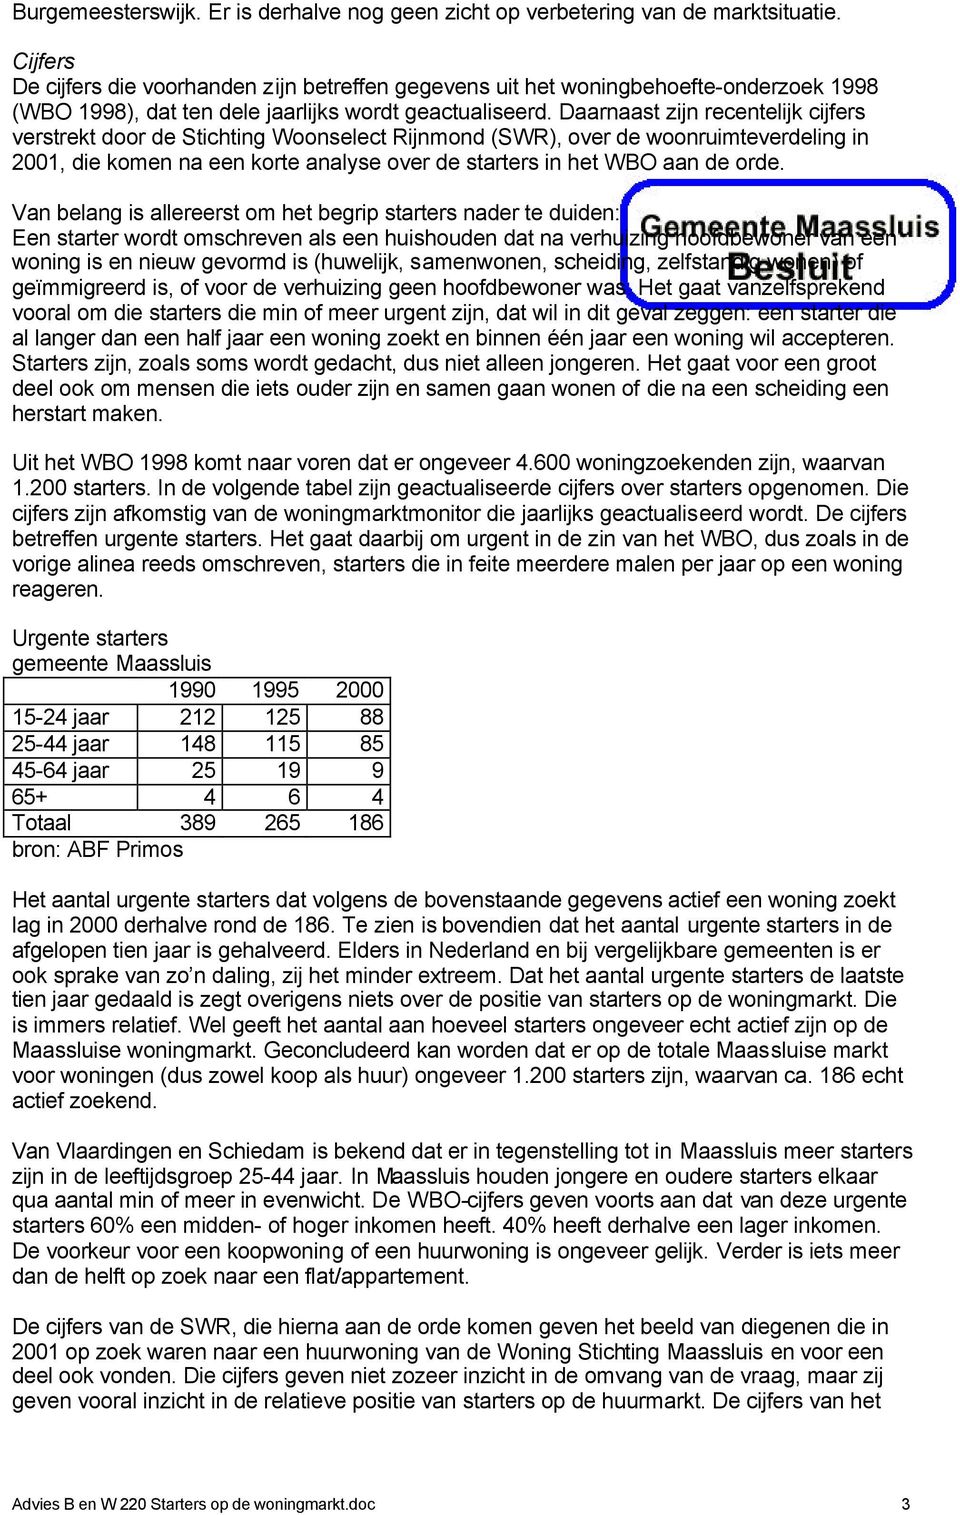 Daarnaast zijn recentelijk cijfers verstrekt door de Stichting Woonselect Rijnmond (SWR), over de woonruimteverdeling in 2001, die komen na een korte analyse over de starters in het WBO aan de orde.